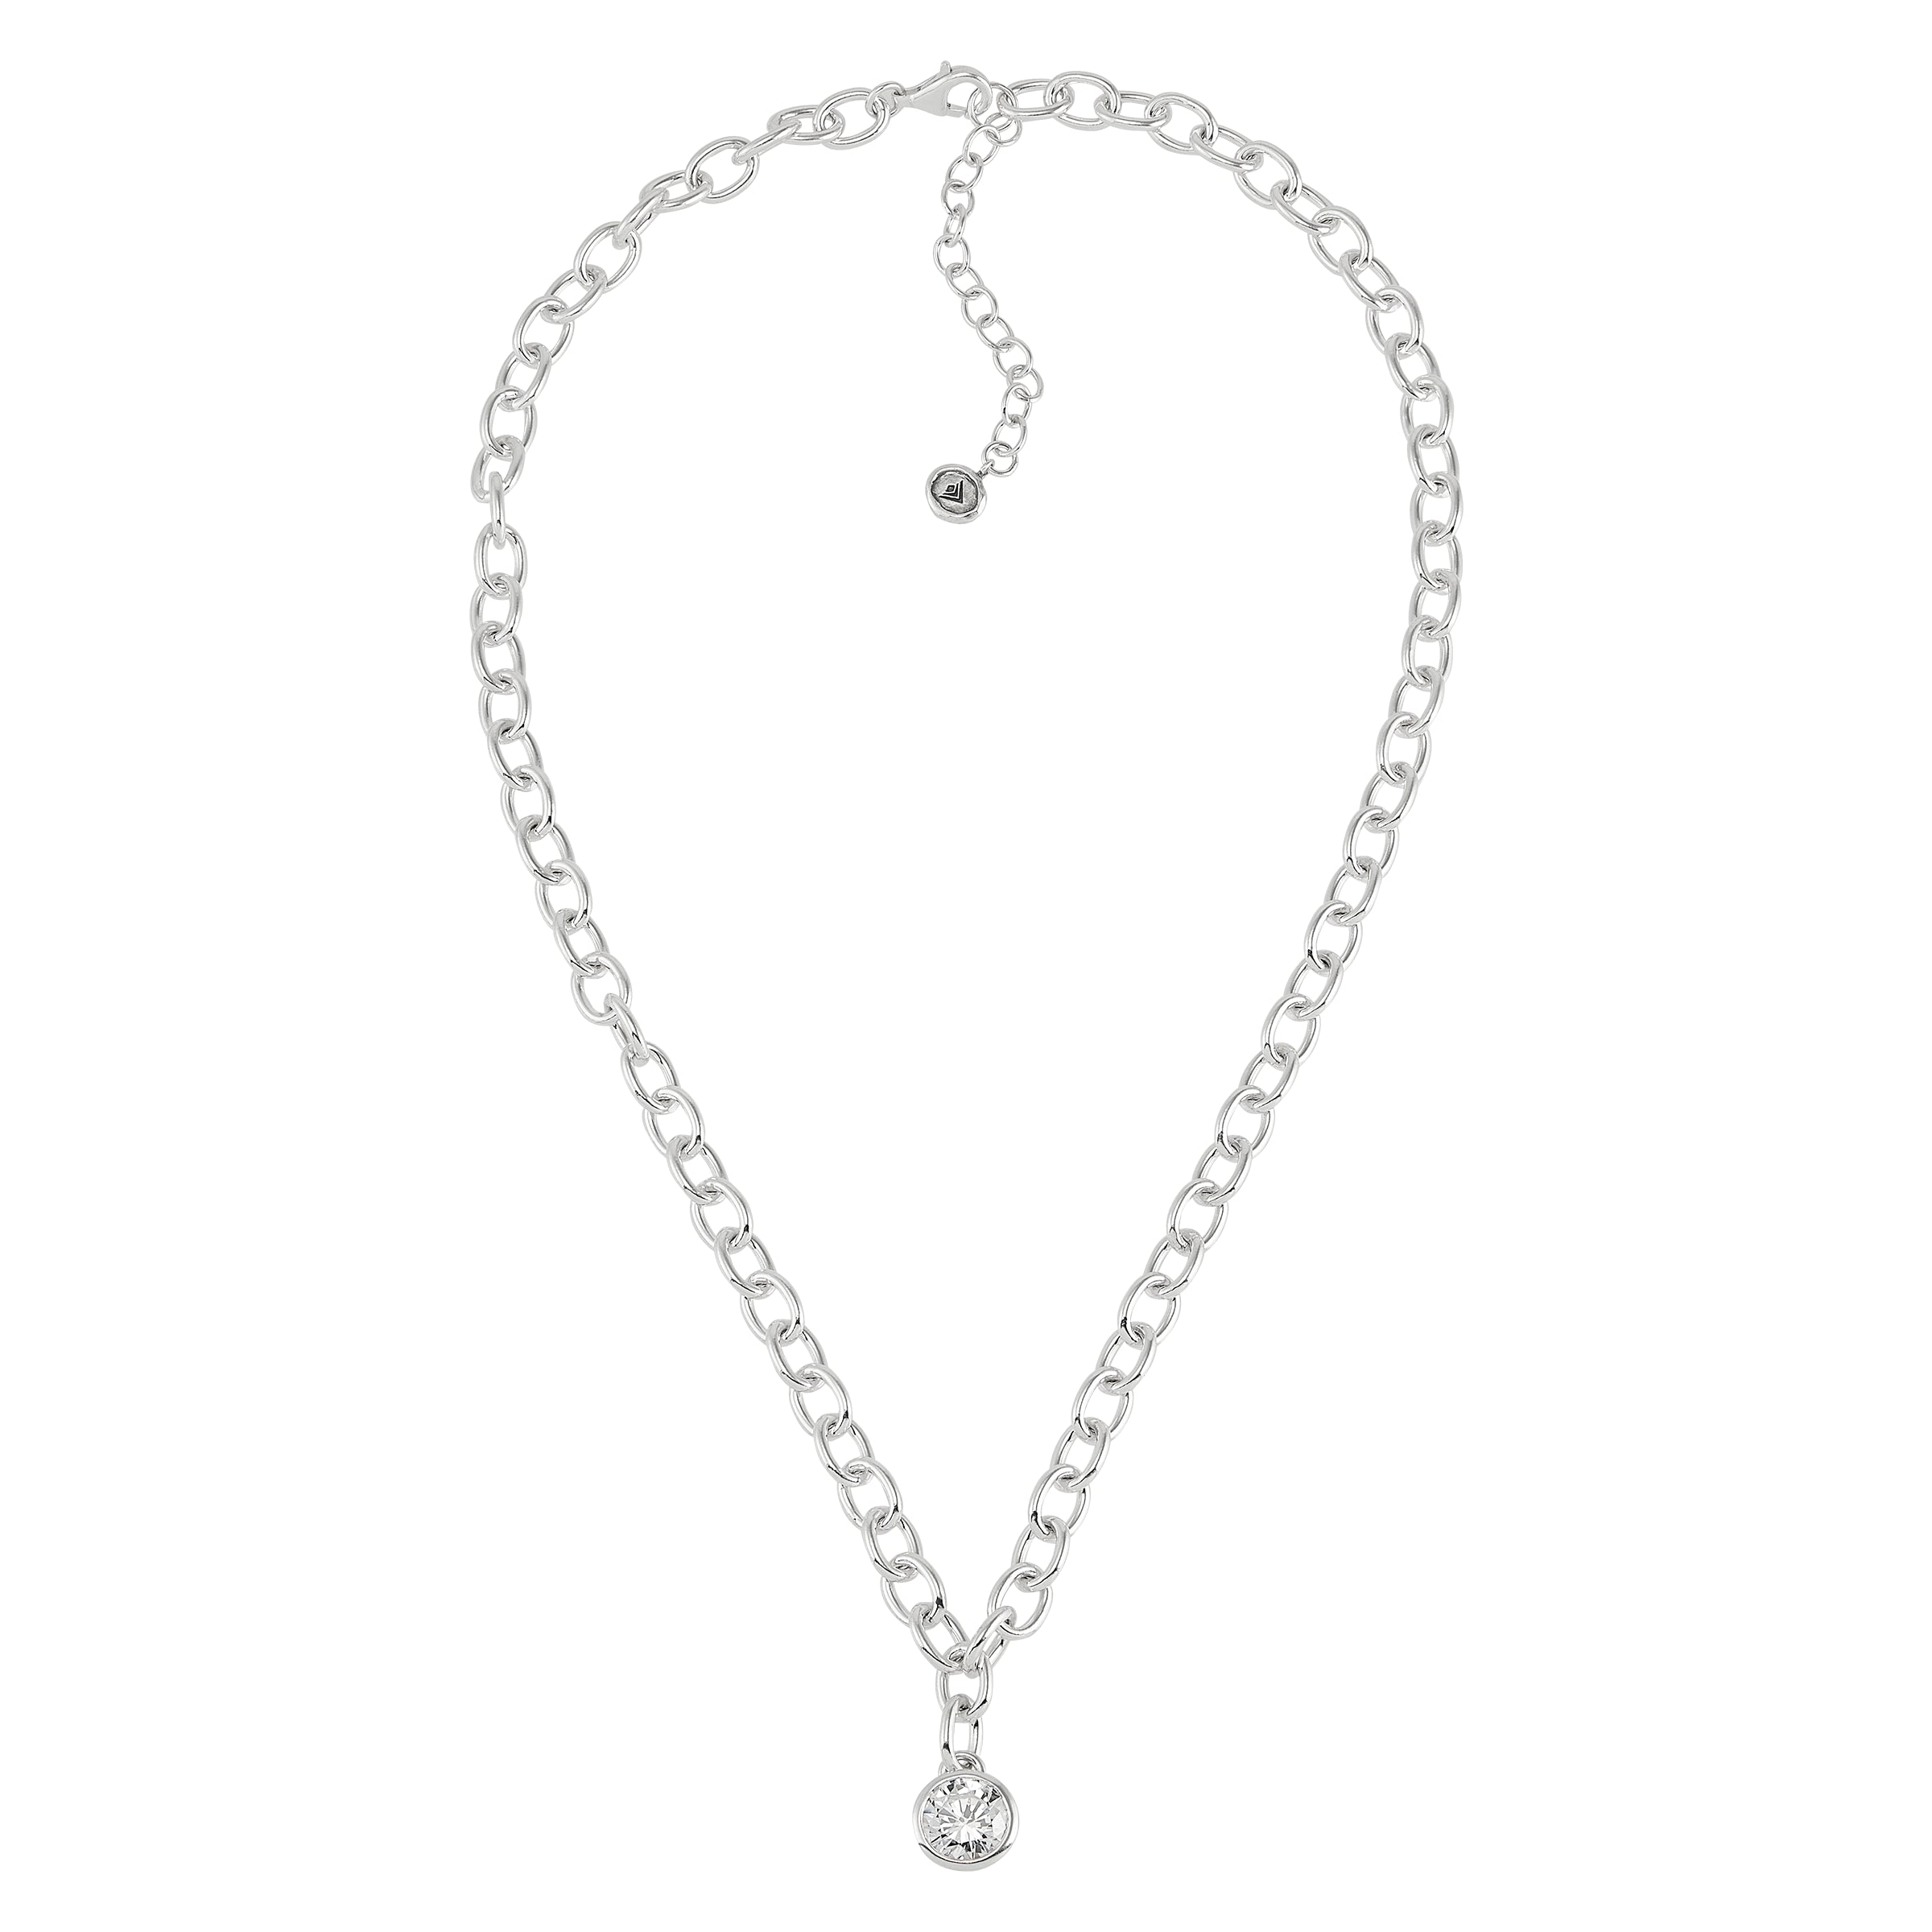 Silpada - Elegant You  Necklace - Arktana - Jewelry